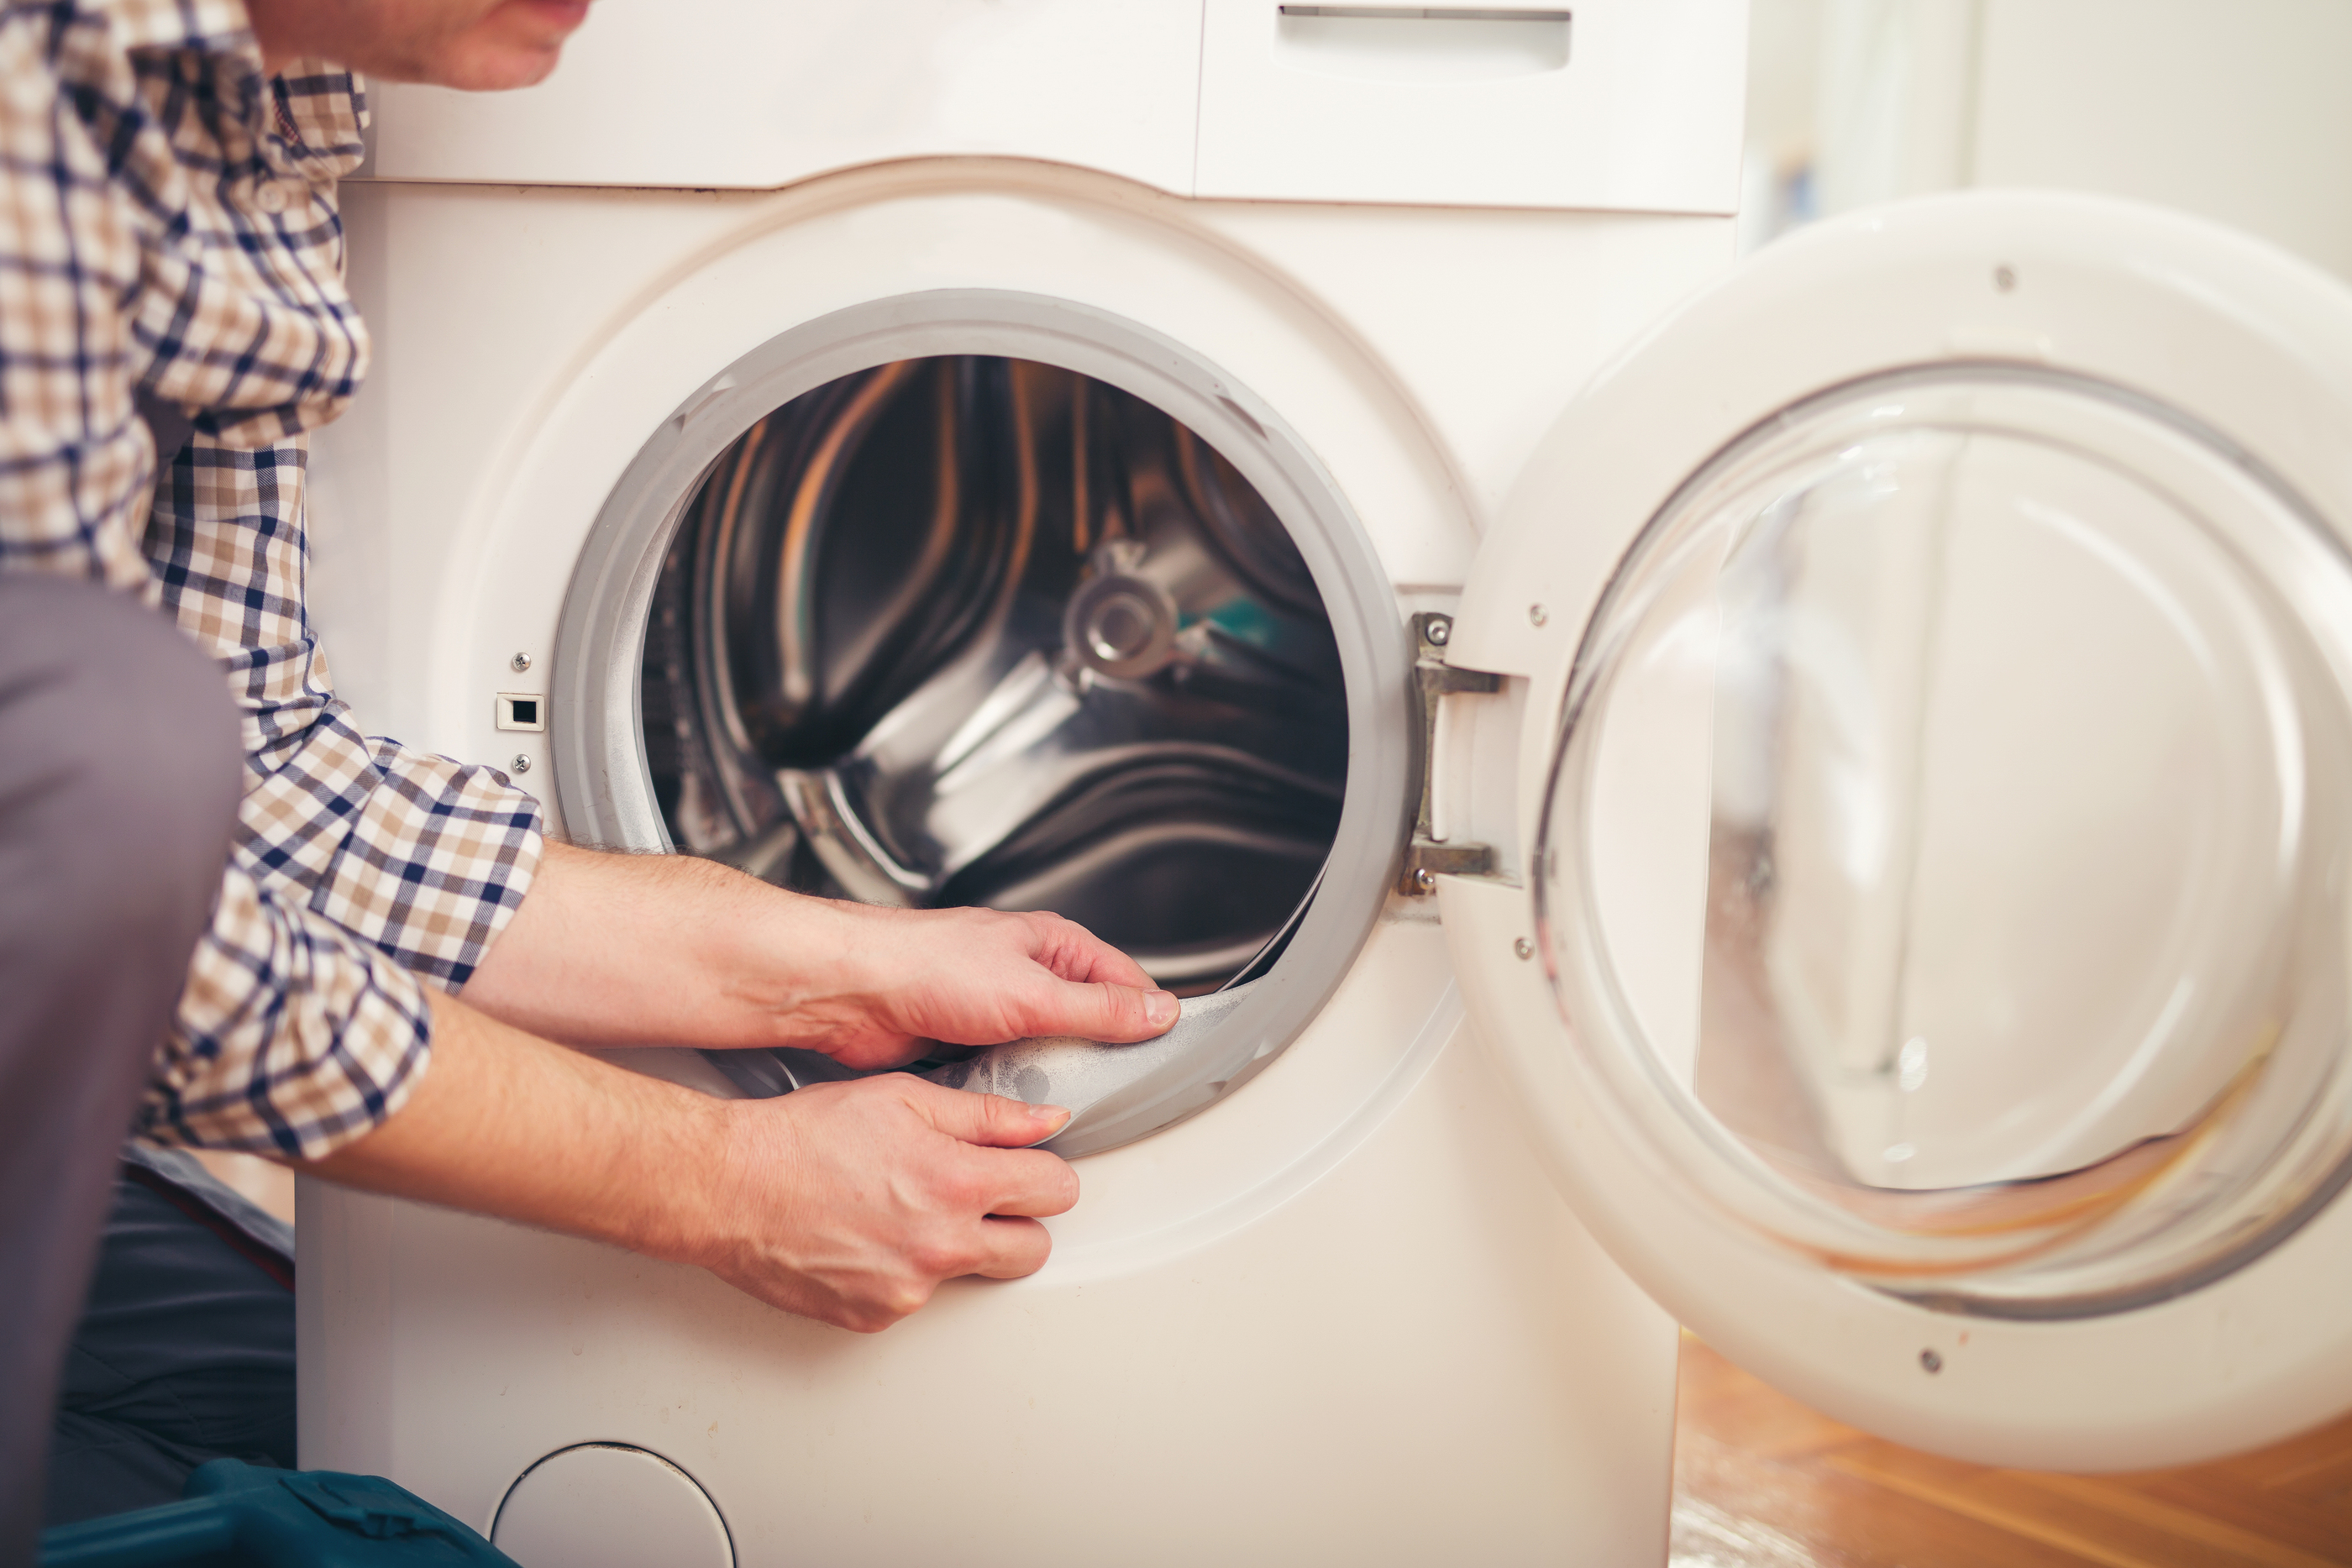 Hướng dẫn bạn cách dùng bột vệ sinh lồng giặt máy giặt đúng và hiệu quả nhất - Ảnh 3.